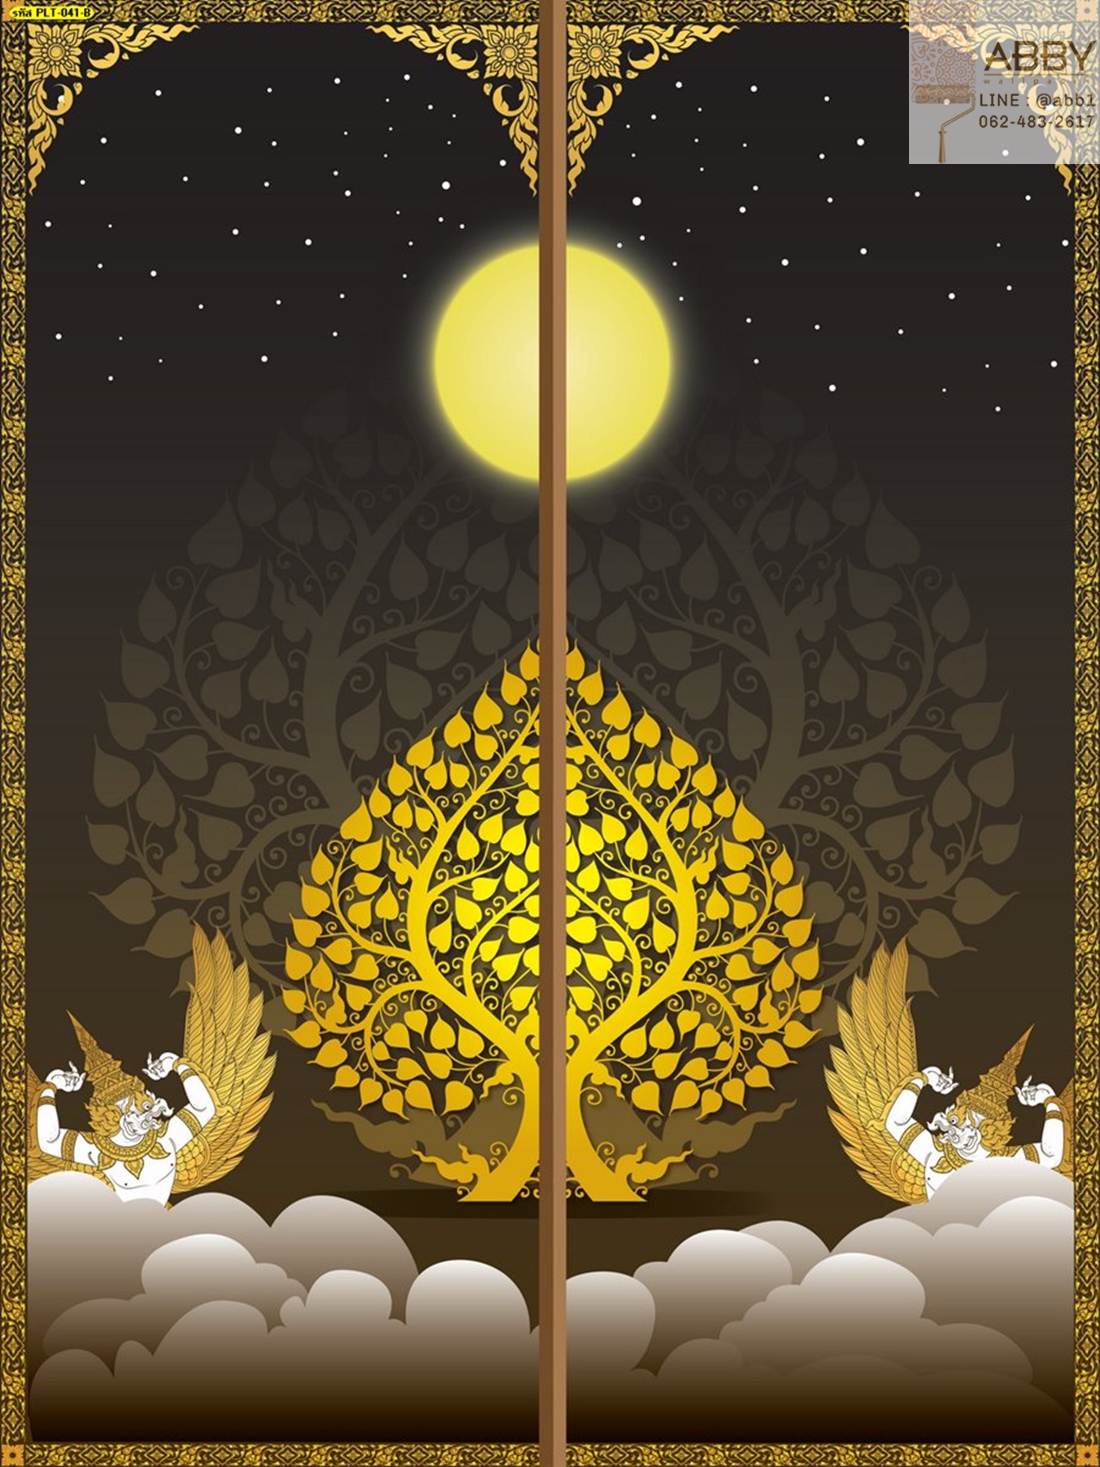 ภาพประตูลายครุฑกับต้นโพธิ์ทองบนก้อนเมฆ